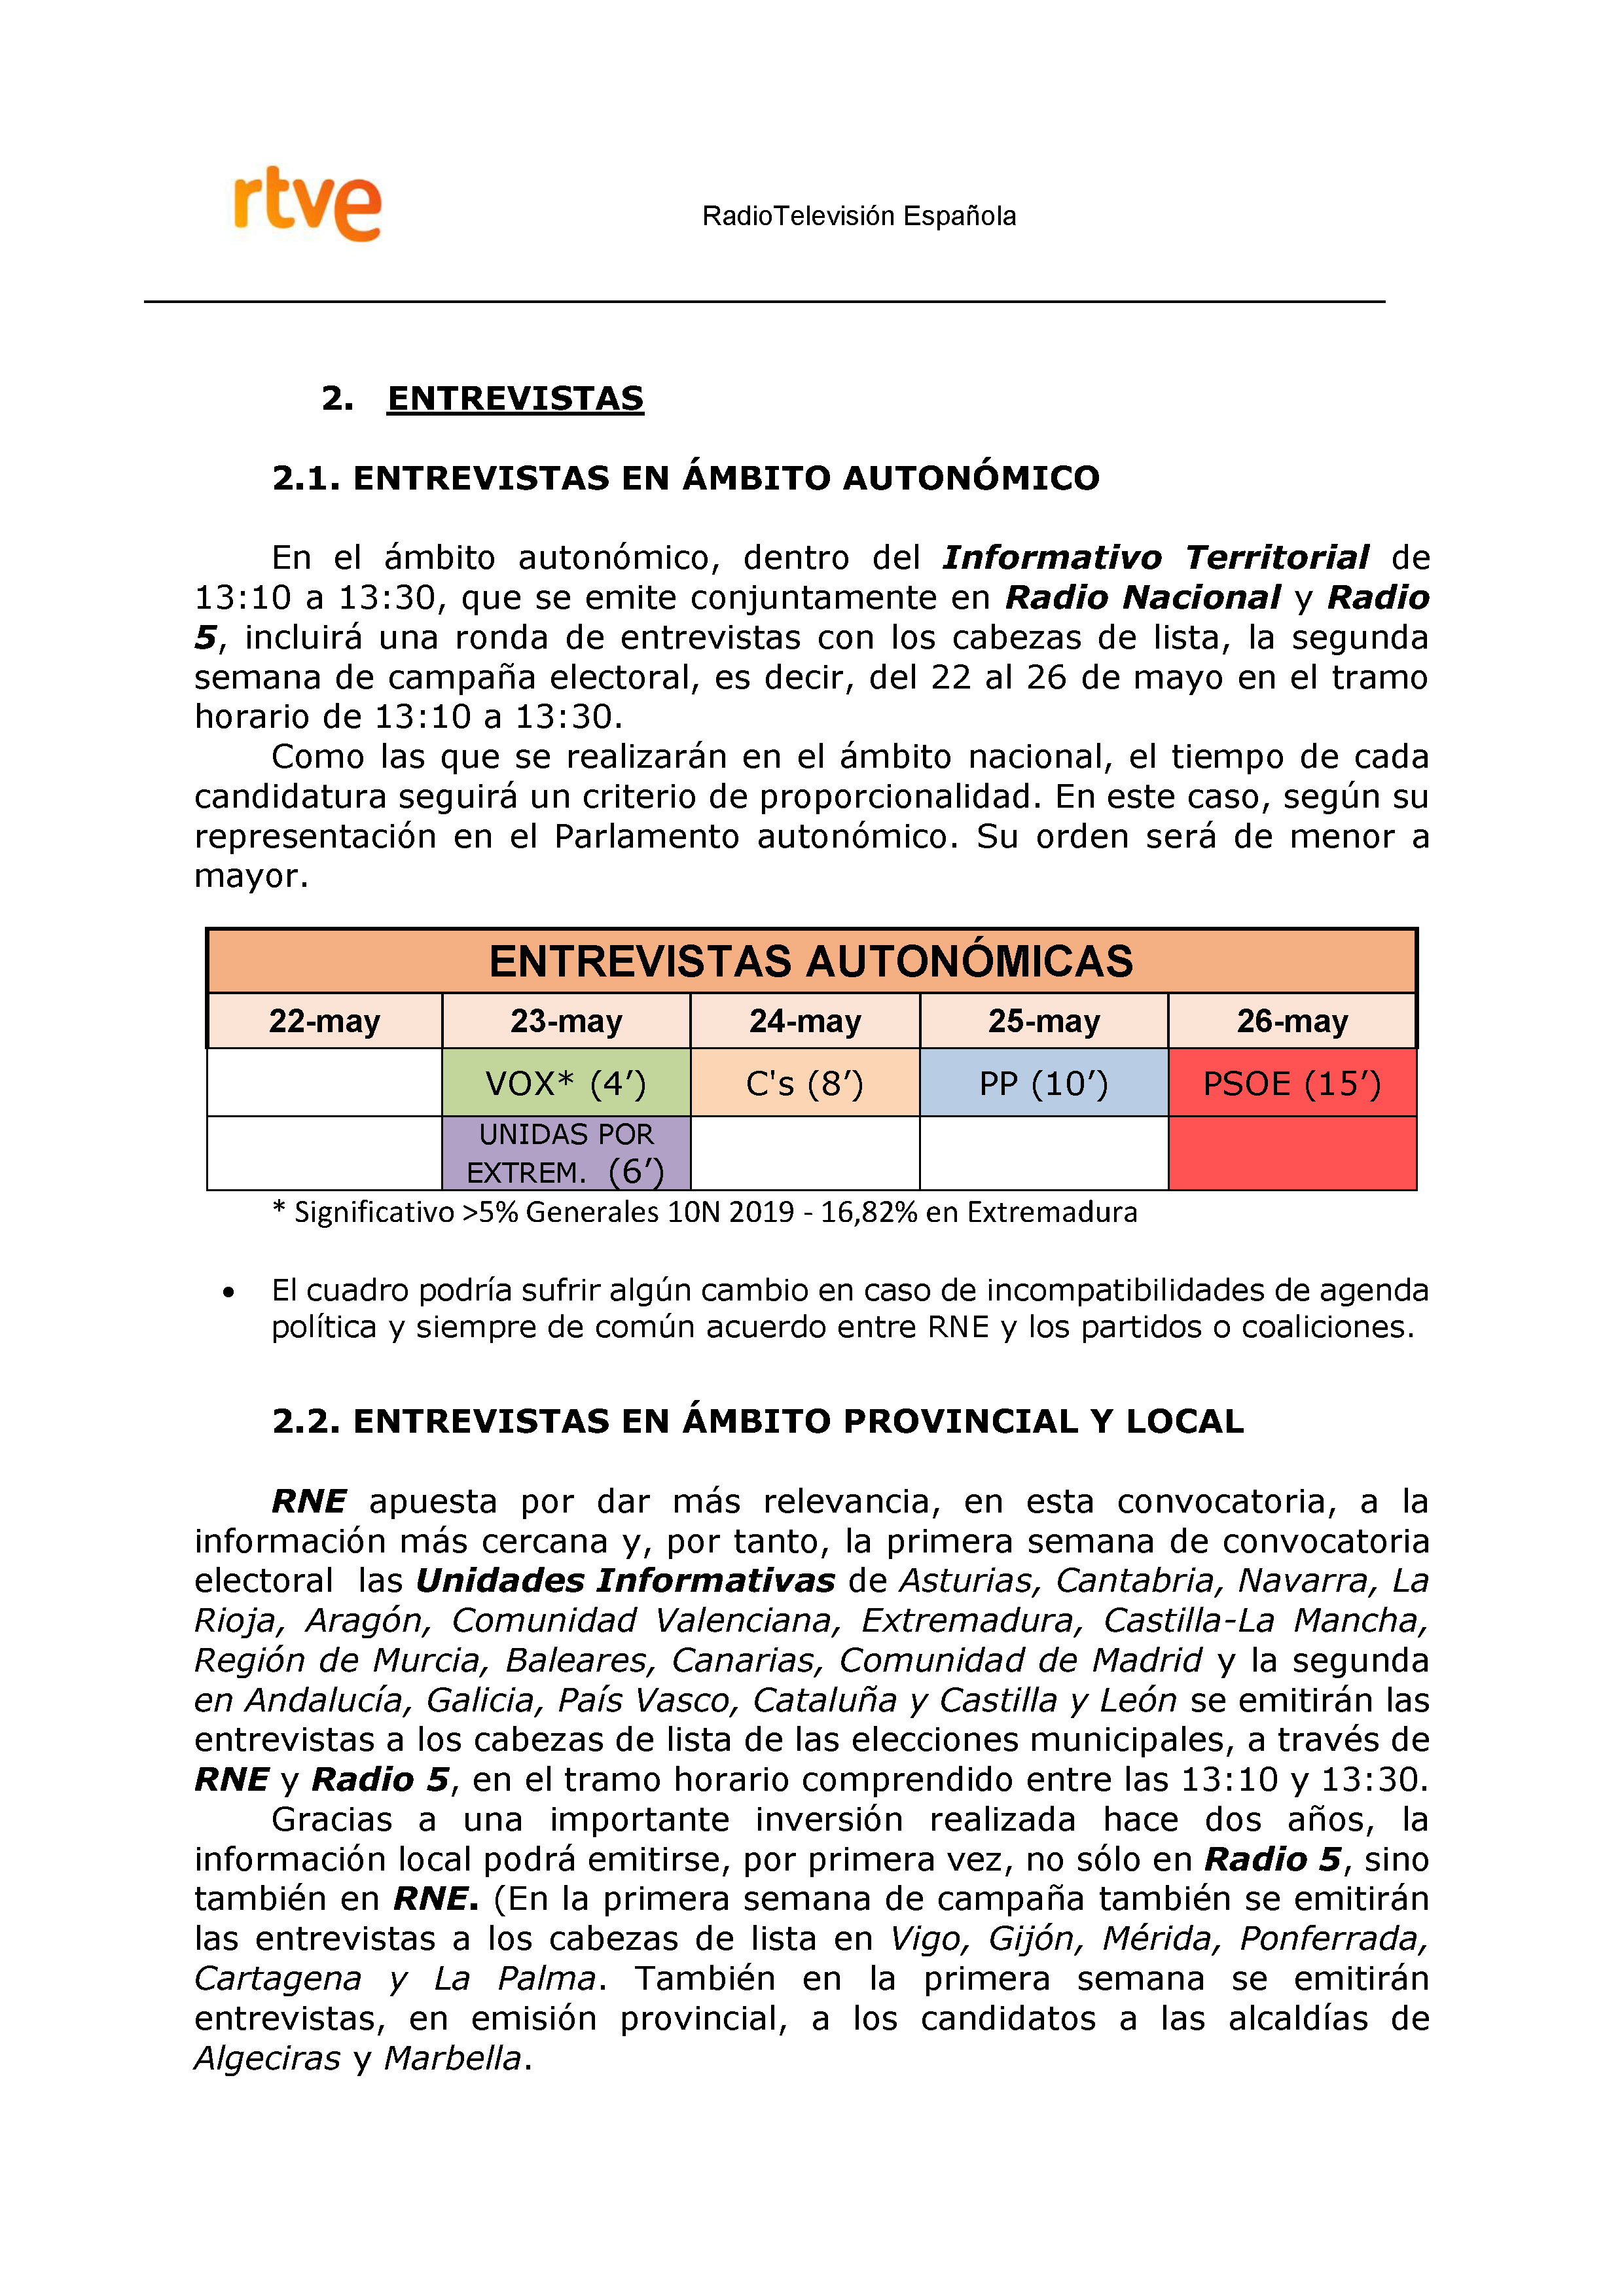 PLAN DE COBERTURA INFORMATIVA RTVE EN EXTREMADURA Pag 11